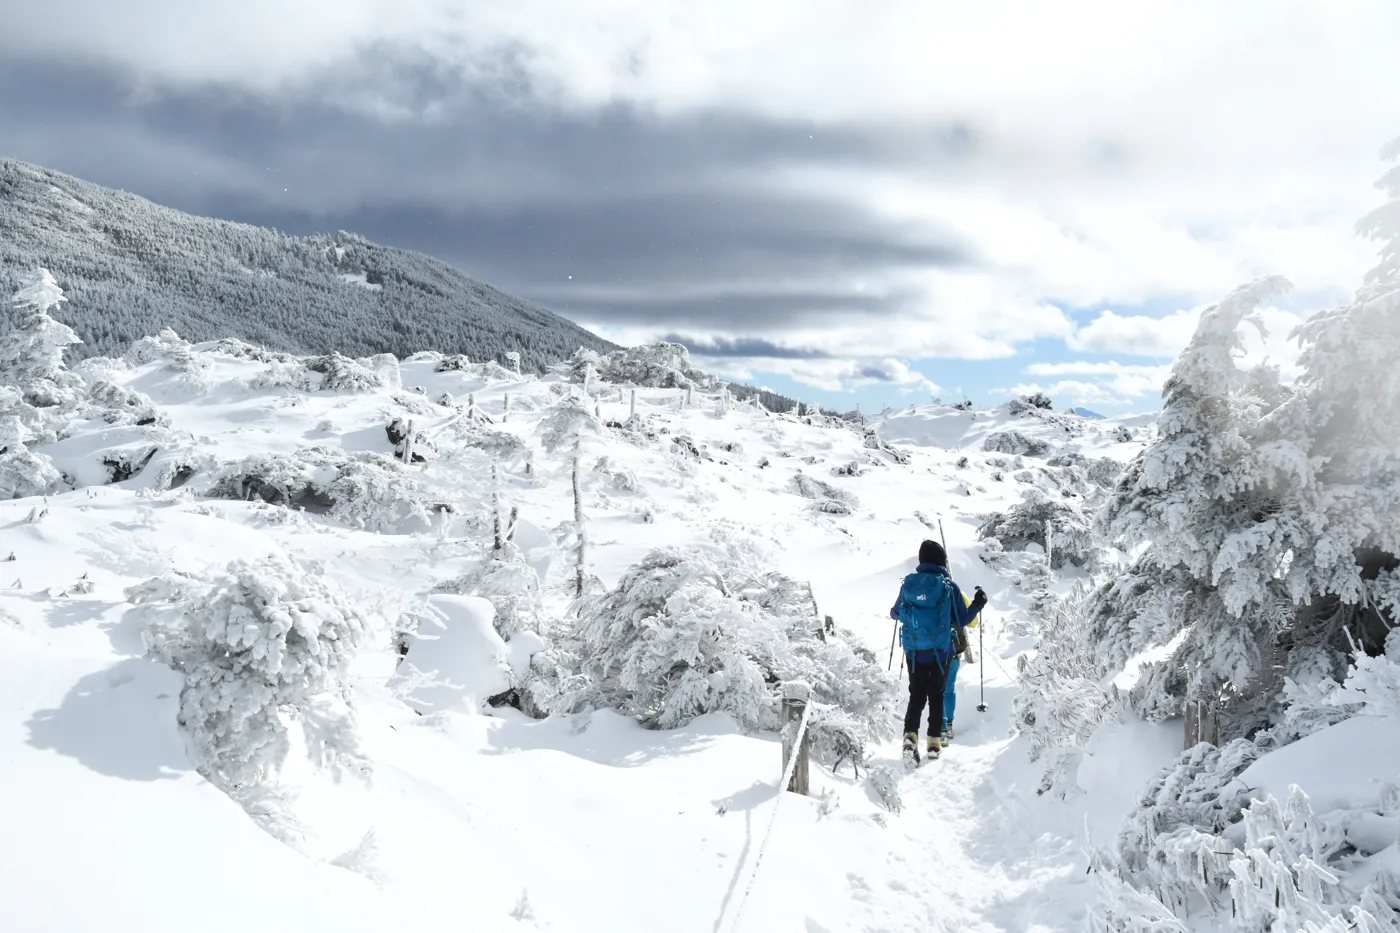 北横岳 登山 2017冬